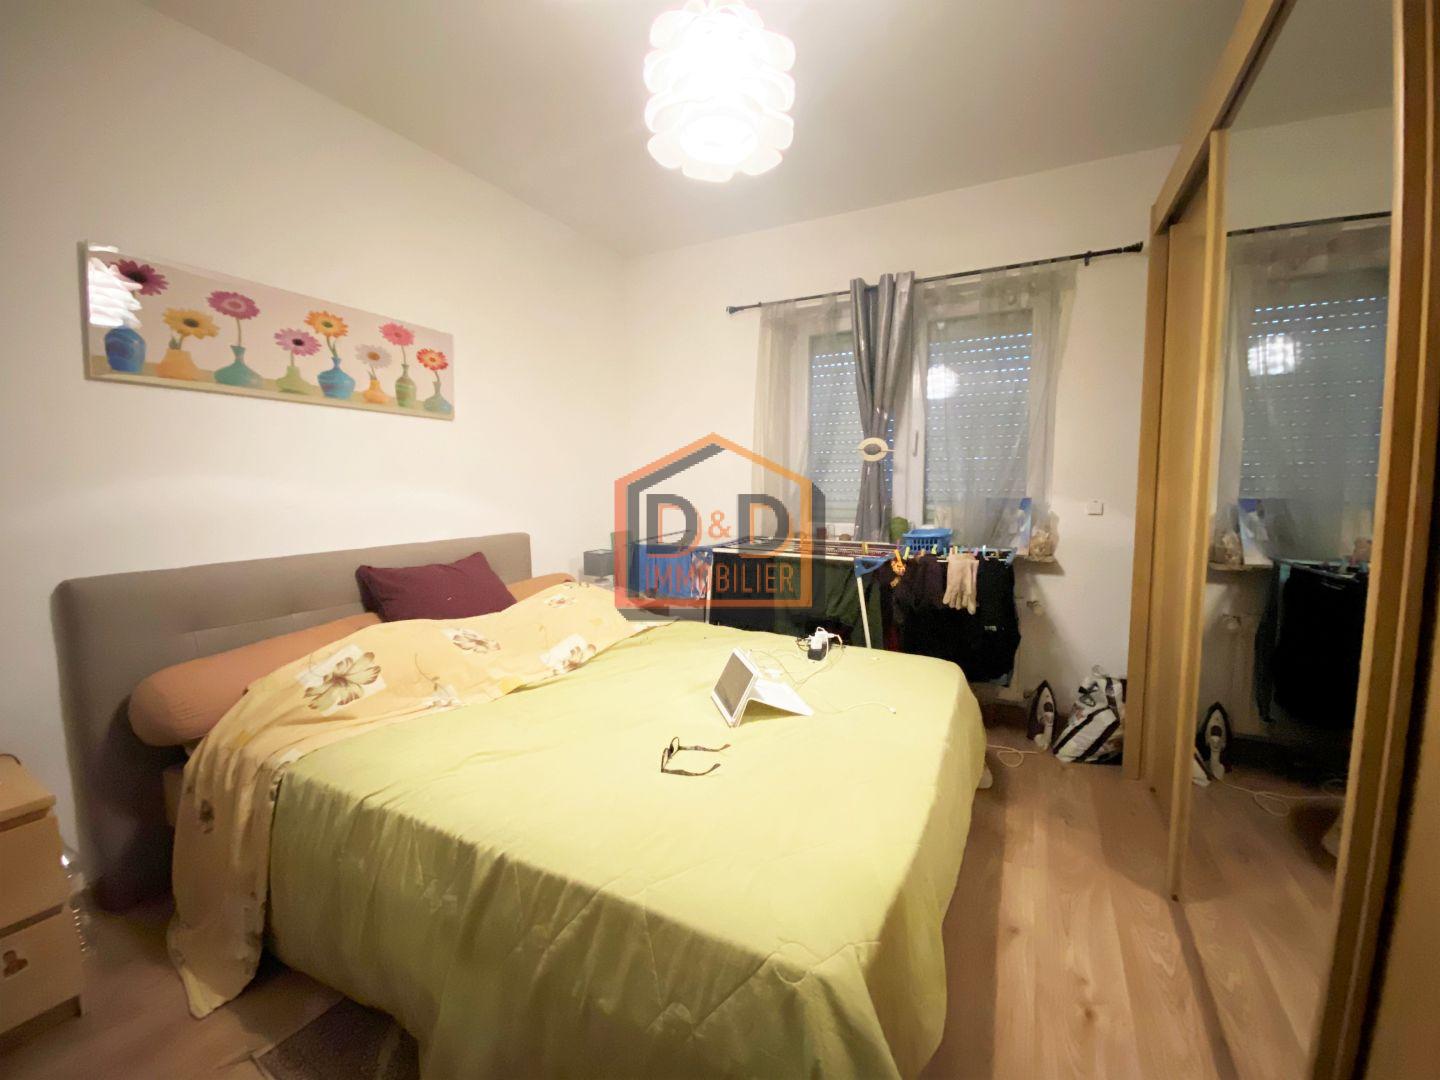 Appartement à Esch-Sur-Alzette, 85 m², 2 chambres, 1 salle de bain, 515 560 €